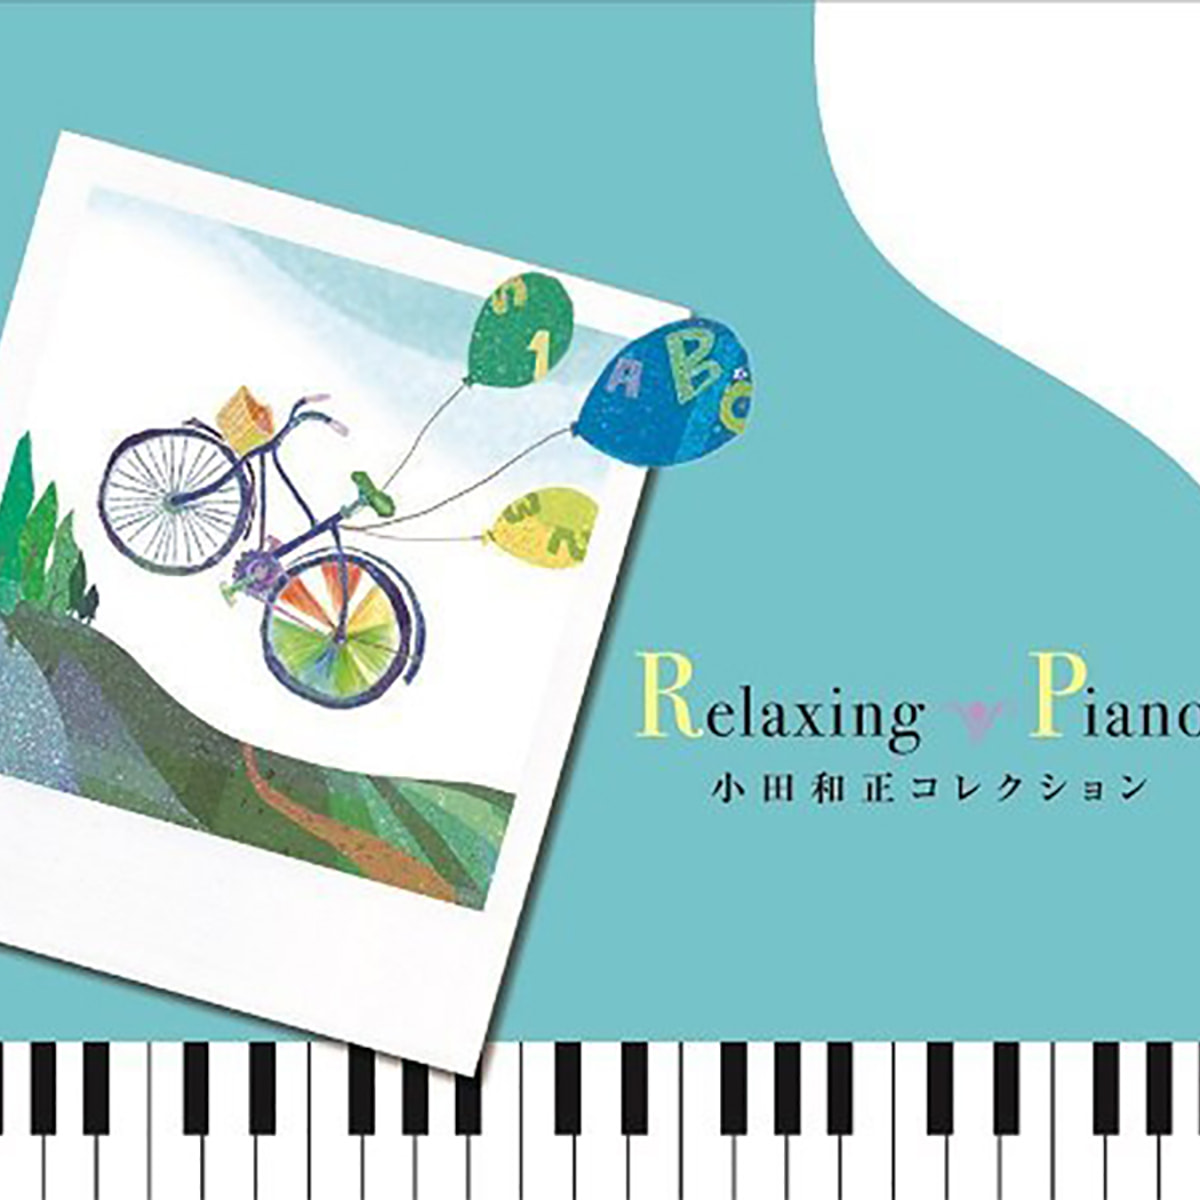 Cd リラクシング ピアノ 小田和正コレクションの卸 通販 ビューティガレージ